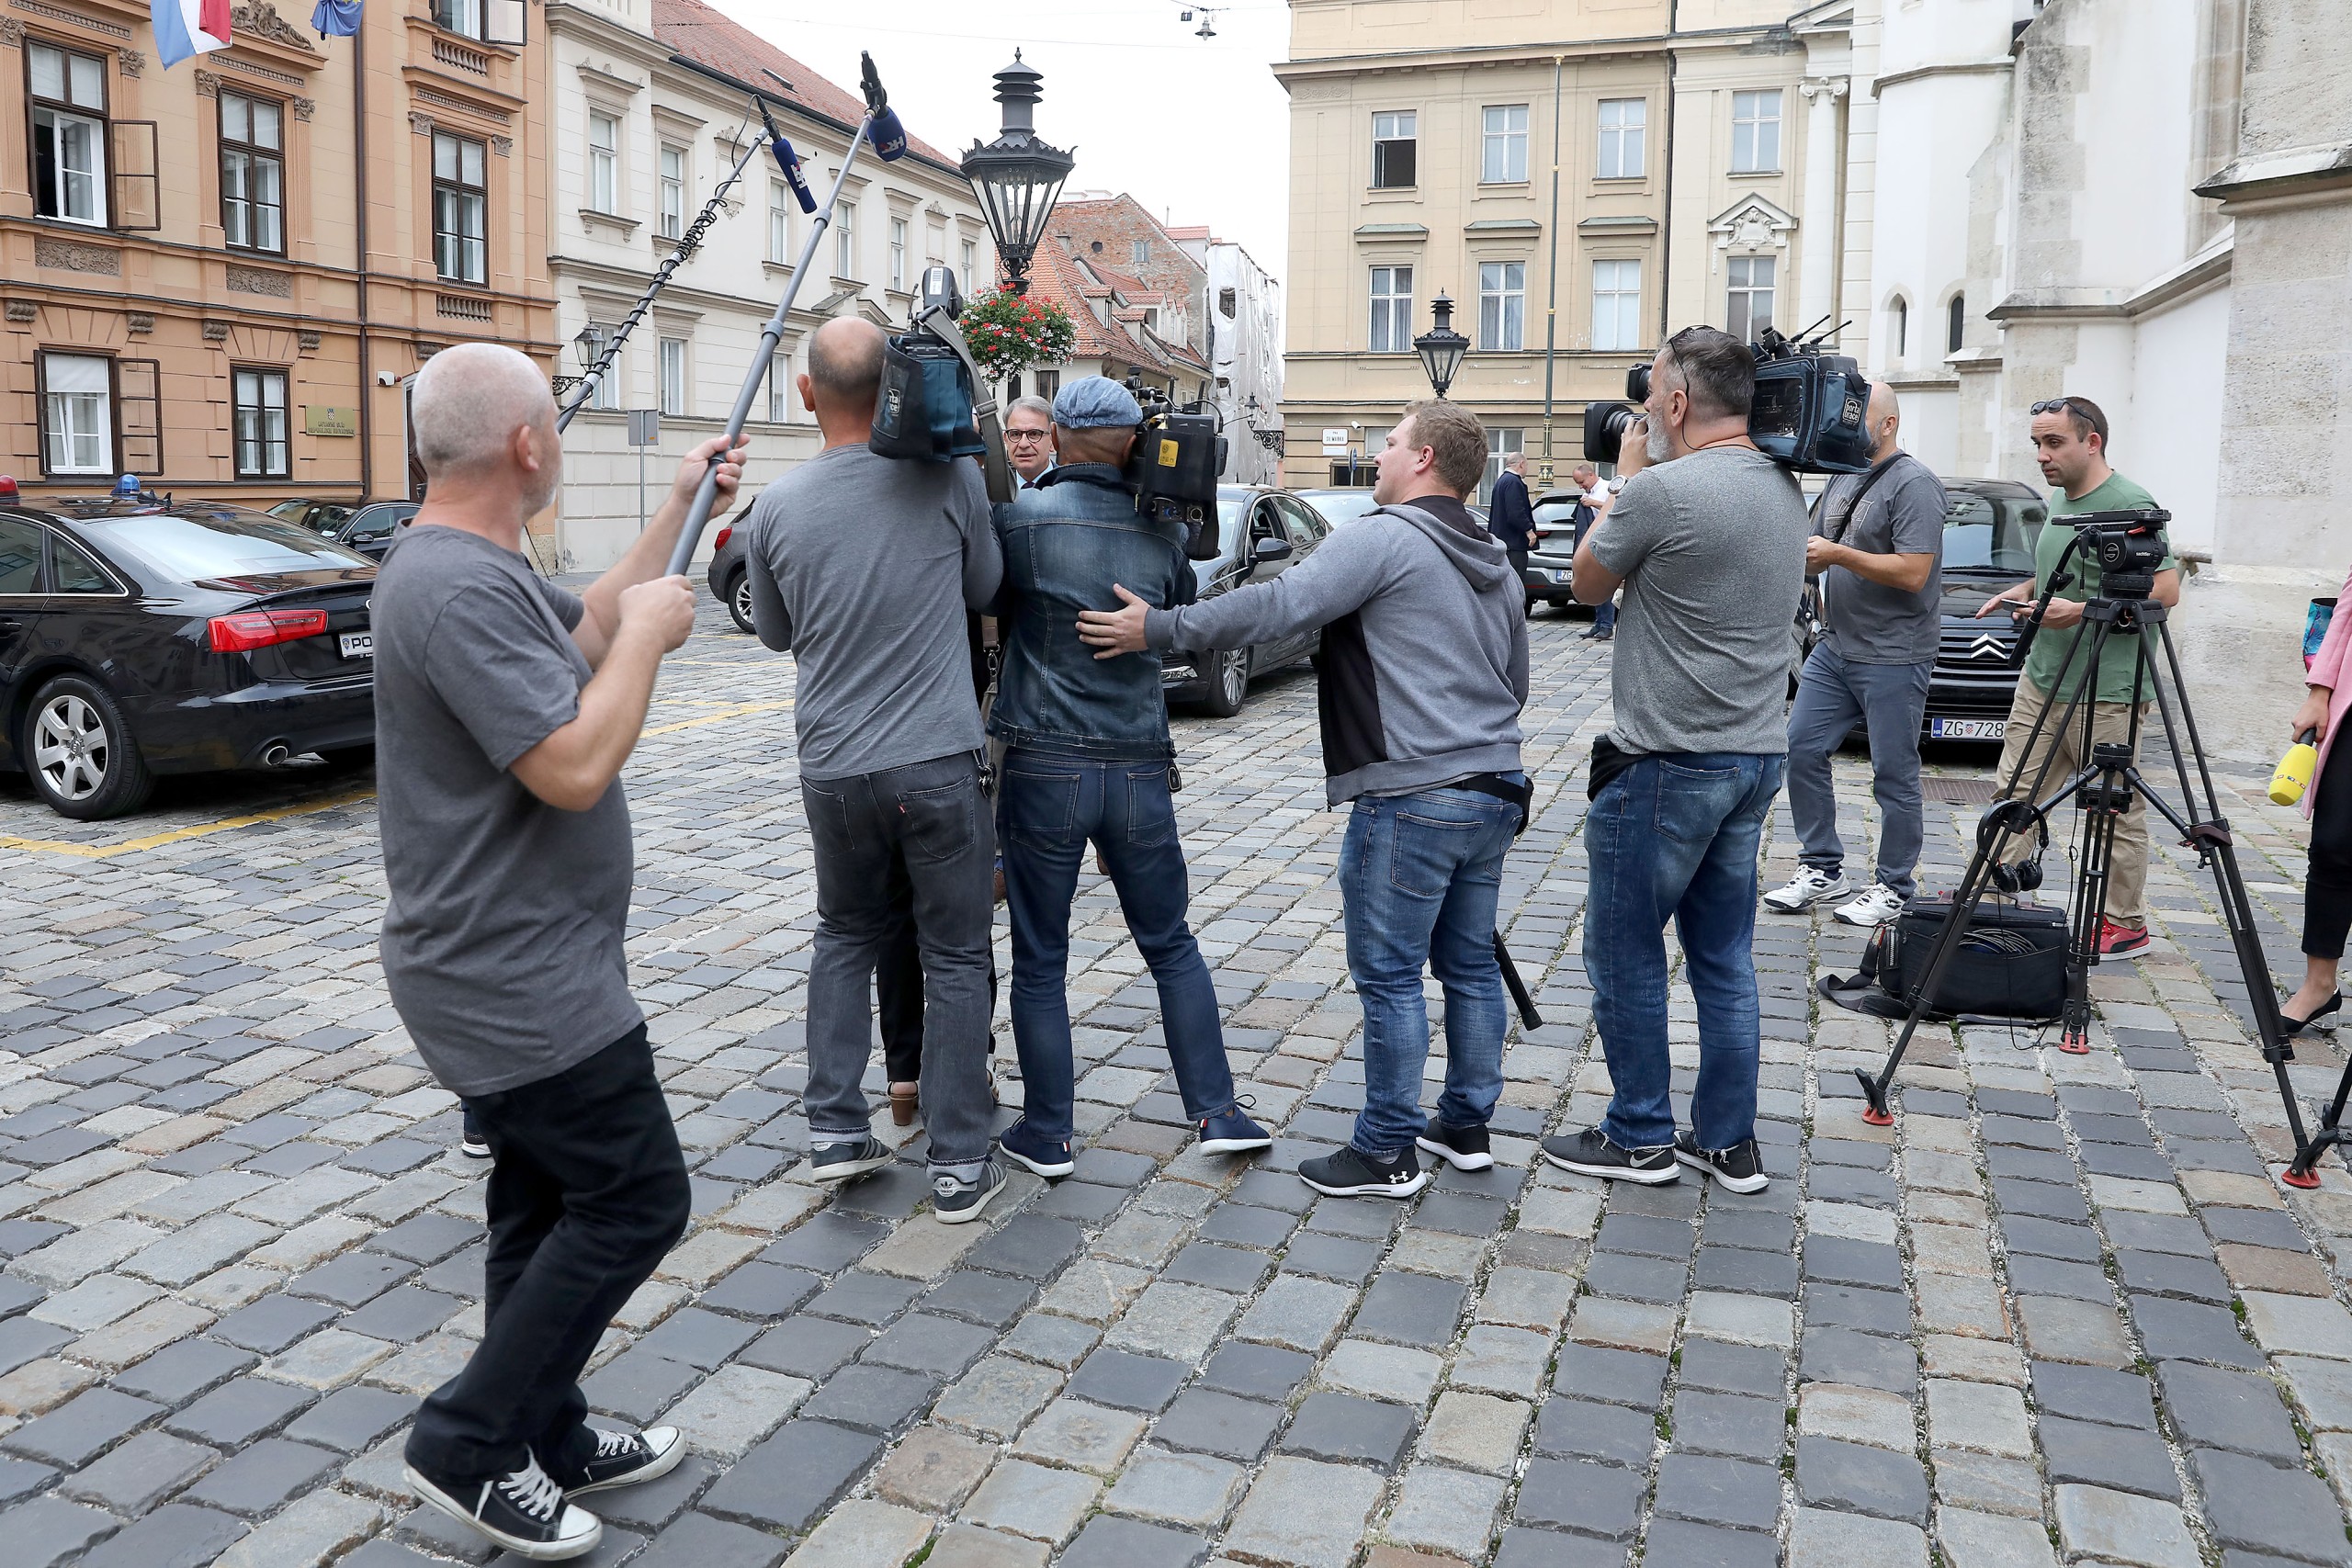 12.09.2019., Zagreb - Novinari i snimatelji cekaju ministre ispred Banskih dvora.rPhoto: Patrik Macek/PIXSELL